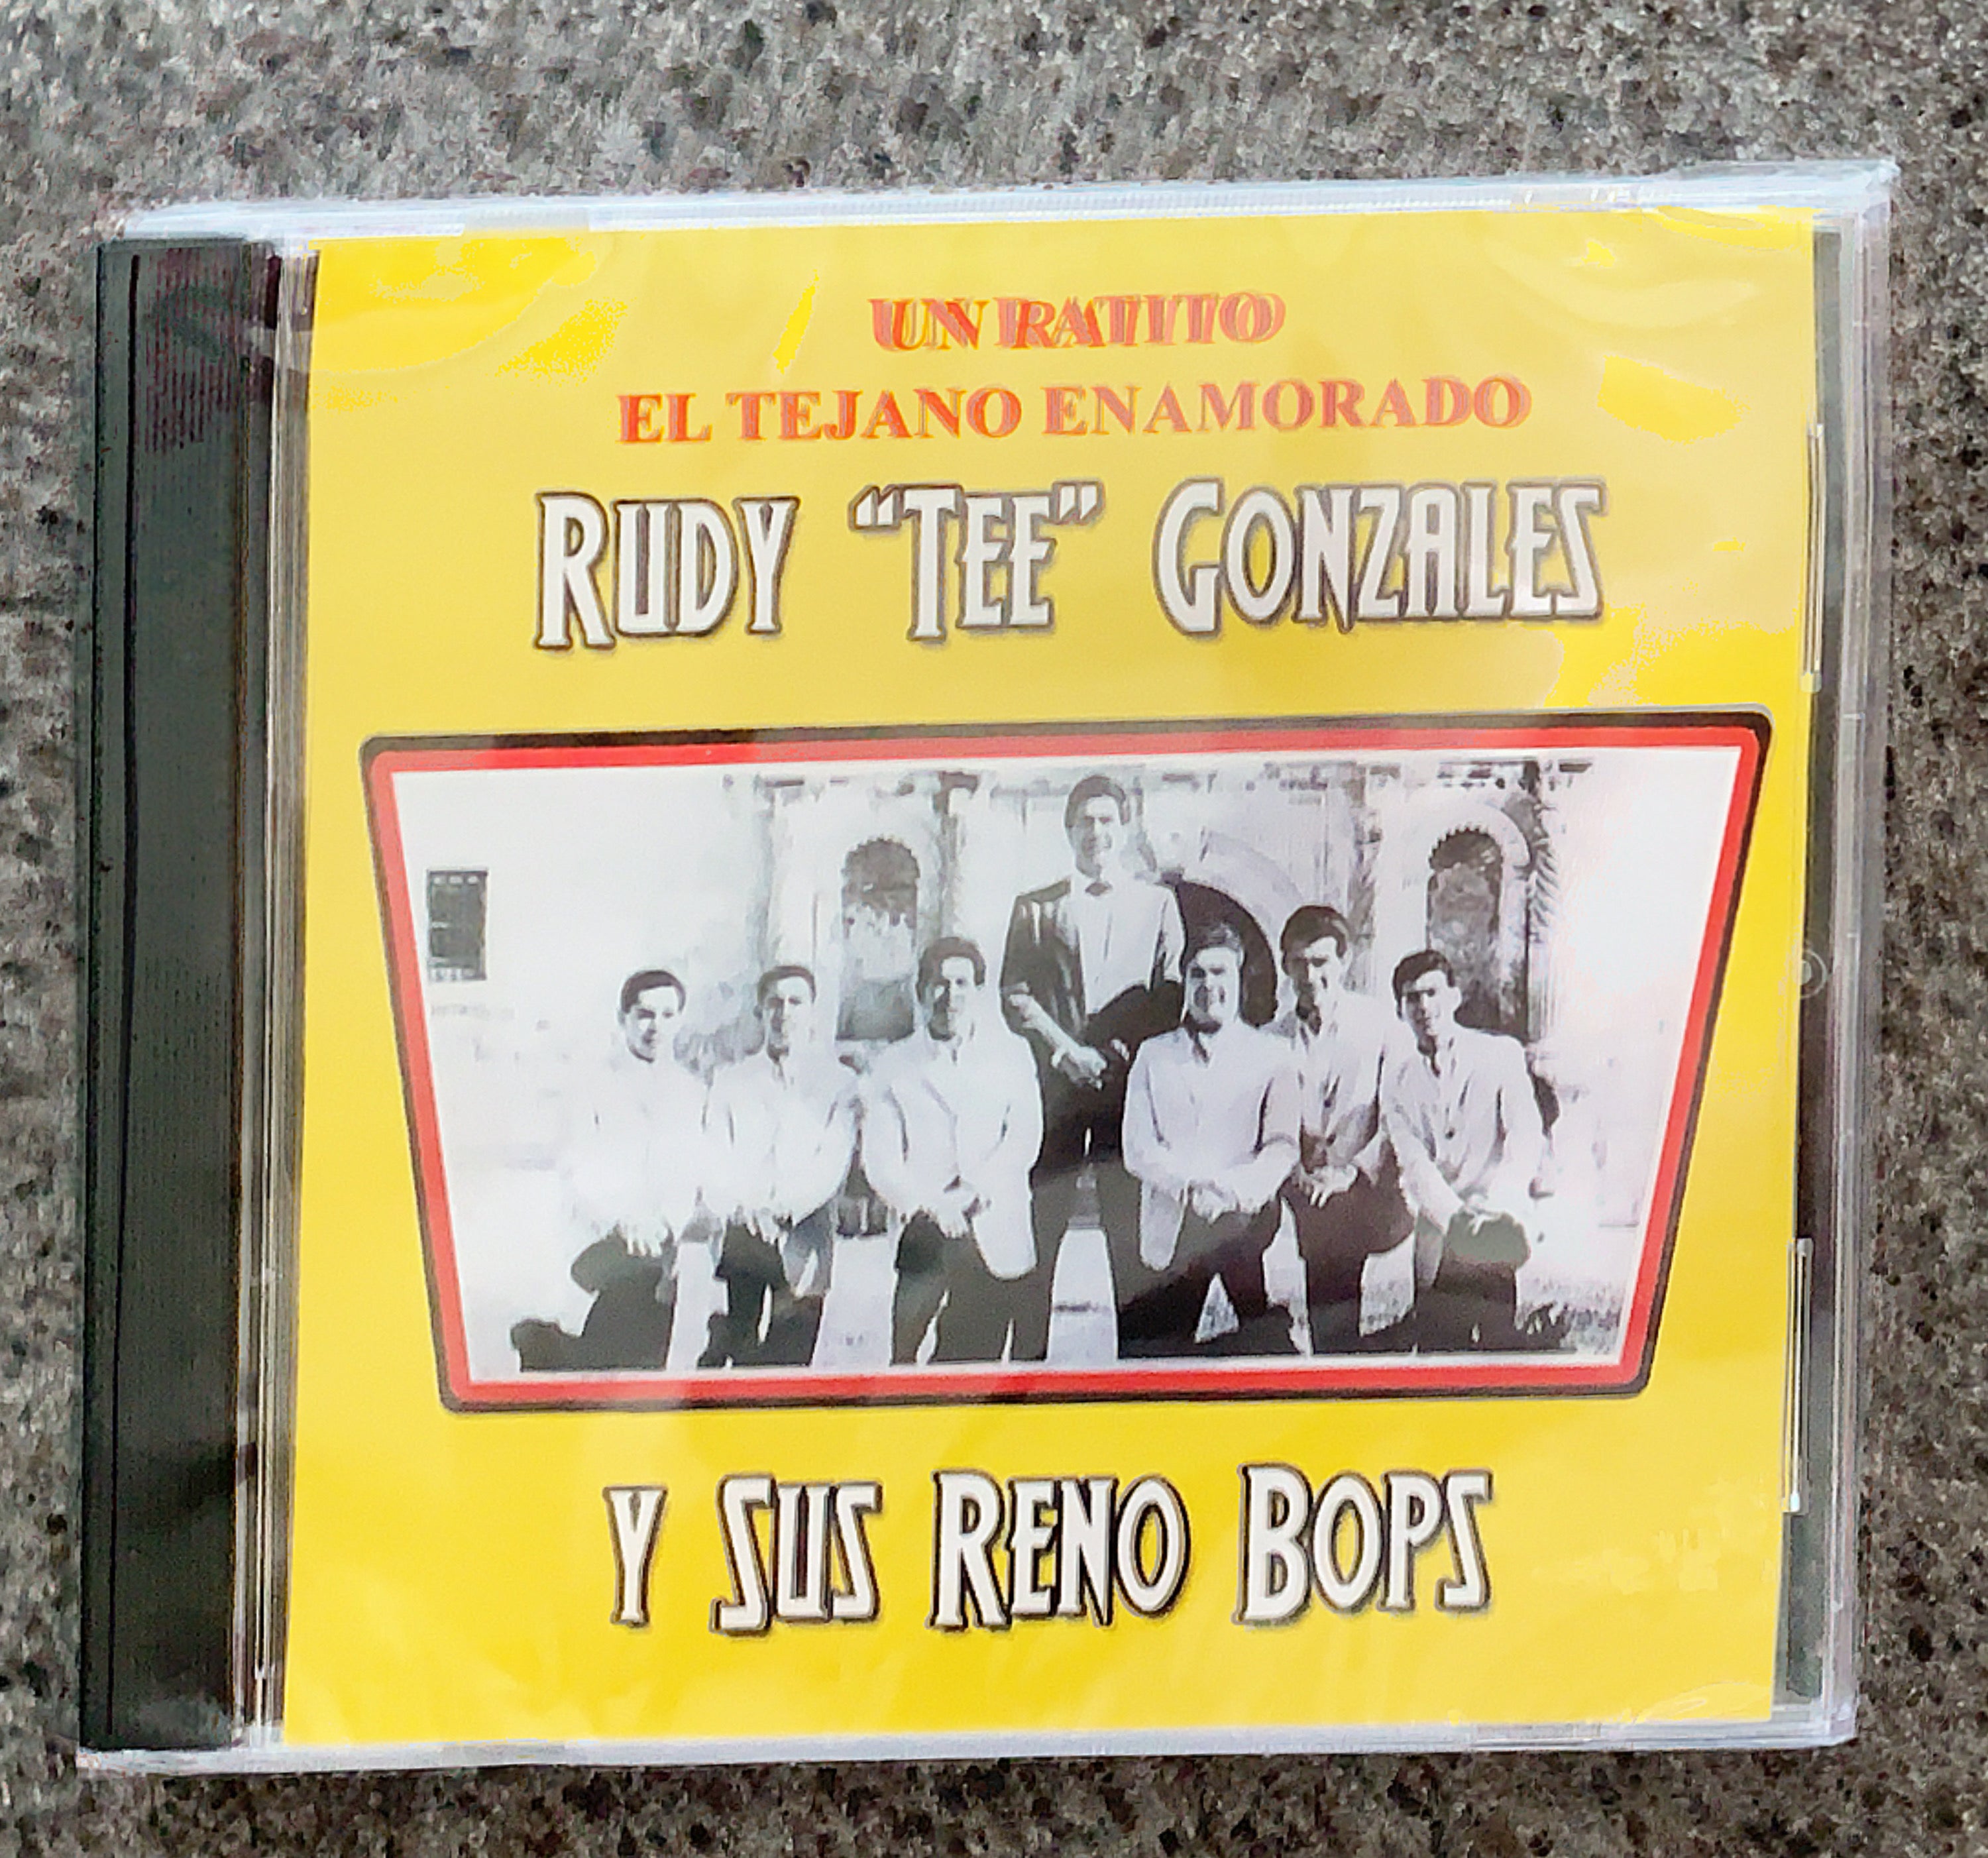 Rudy Tee Gonzales Y Sus Reno Bops Un Ratitoel Tejano Enamorado Cd Del Bravo Record Shop 9234